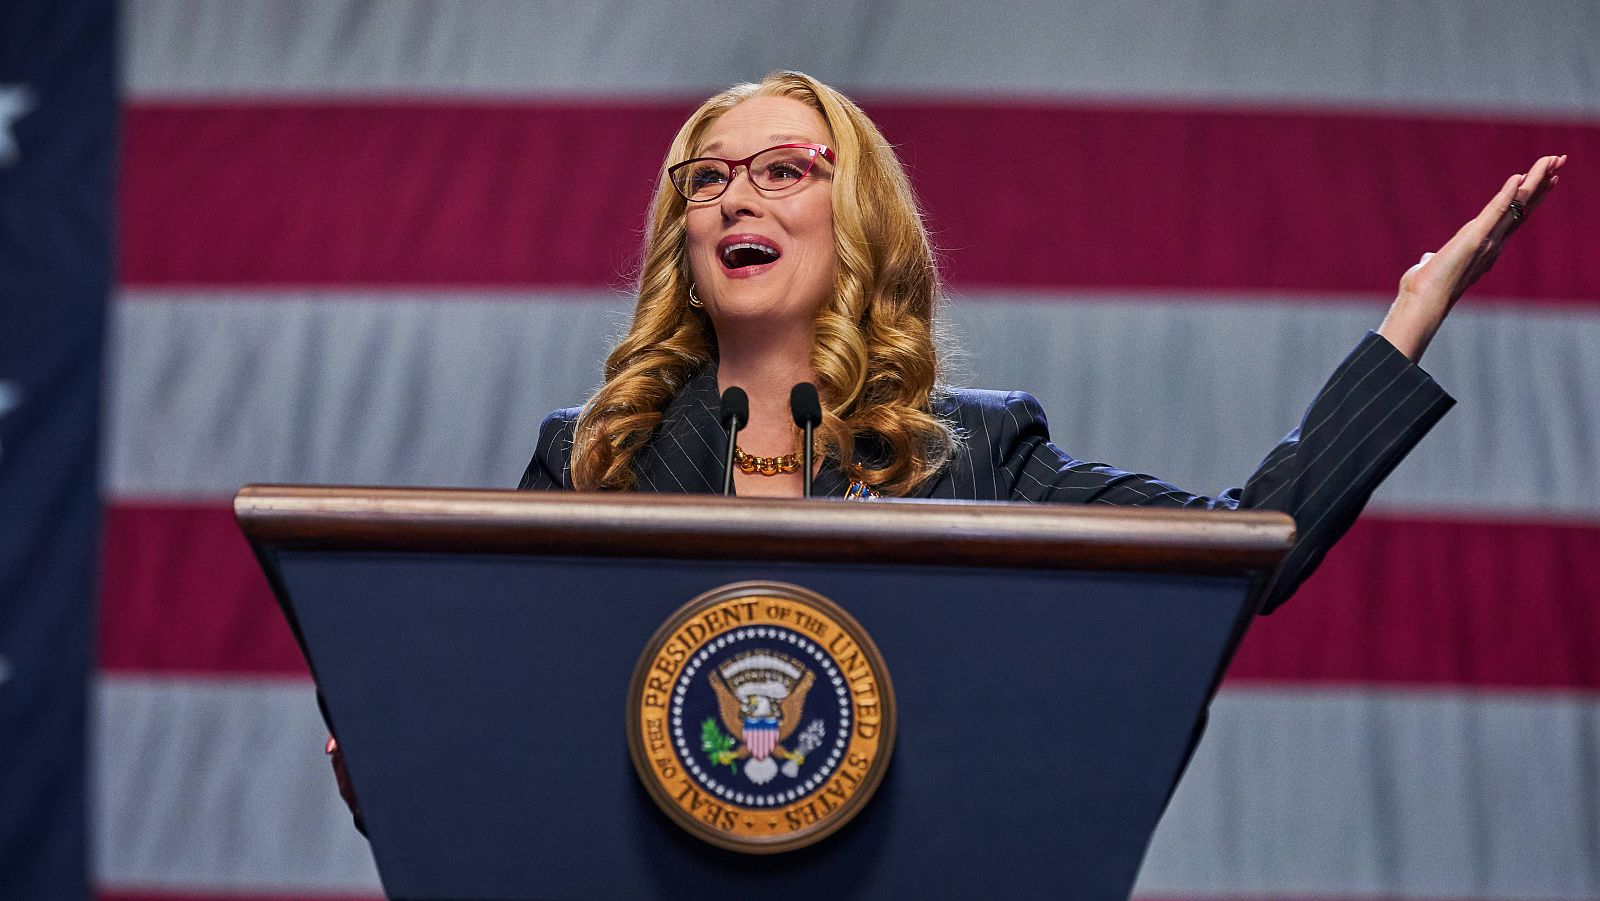 Meryl Streep interpreta a una presidenta de EE.UU. basada en Donald Trump, George W. Bush y Bill Clinton.